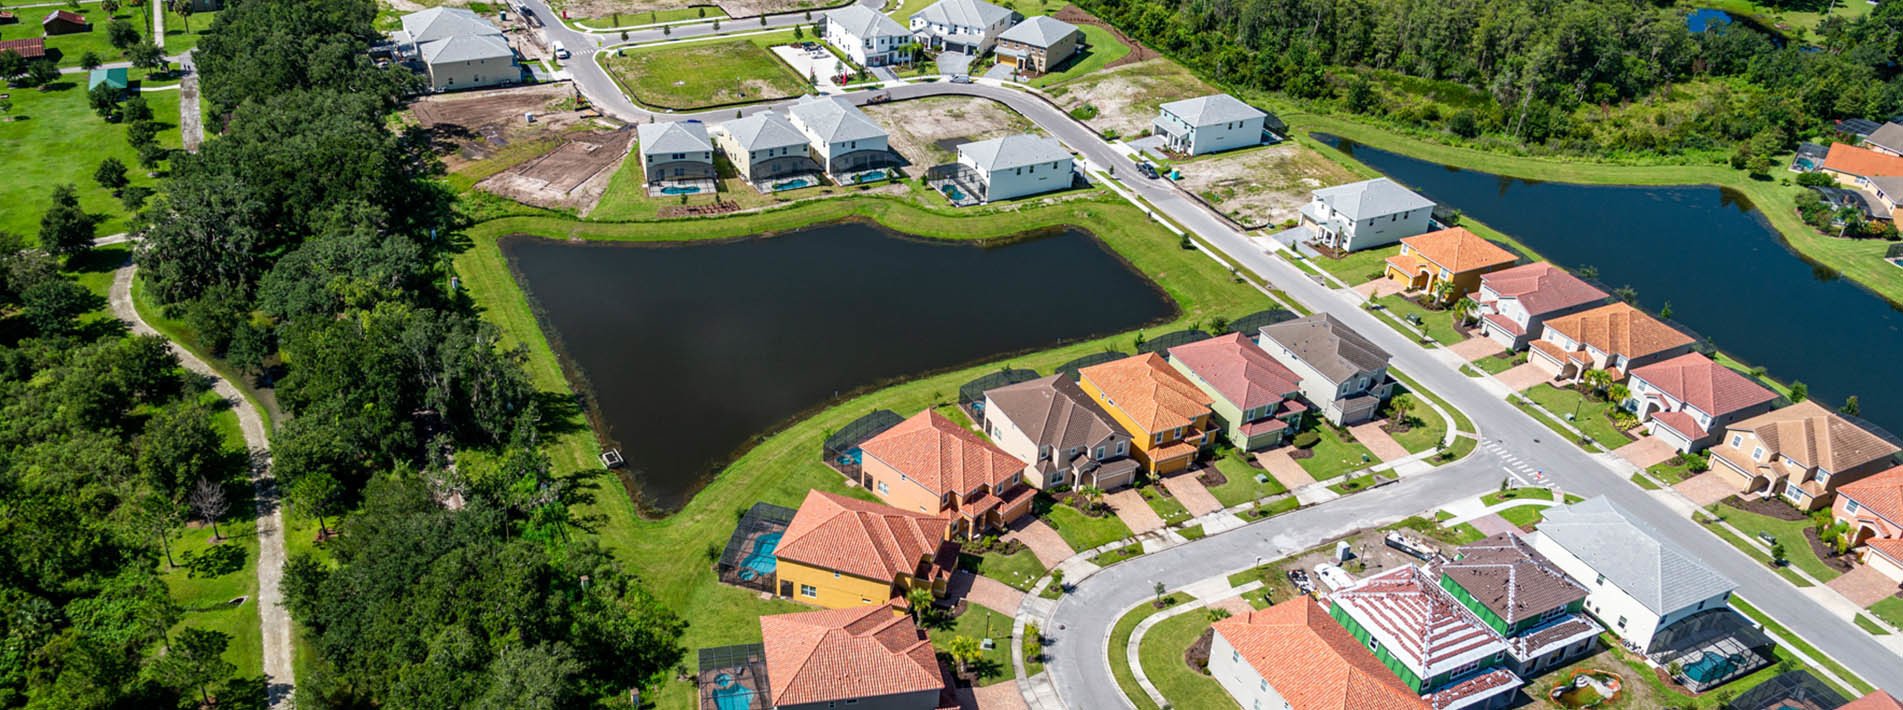 Veranda Palms Orlando Florida Real Estate